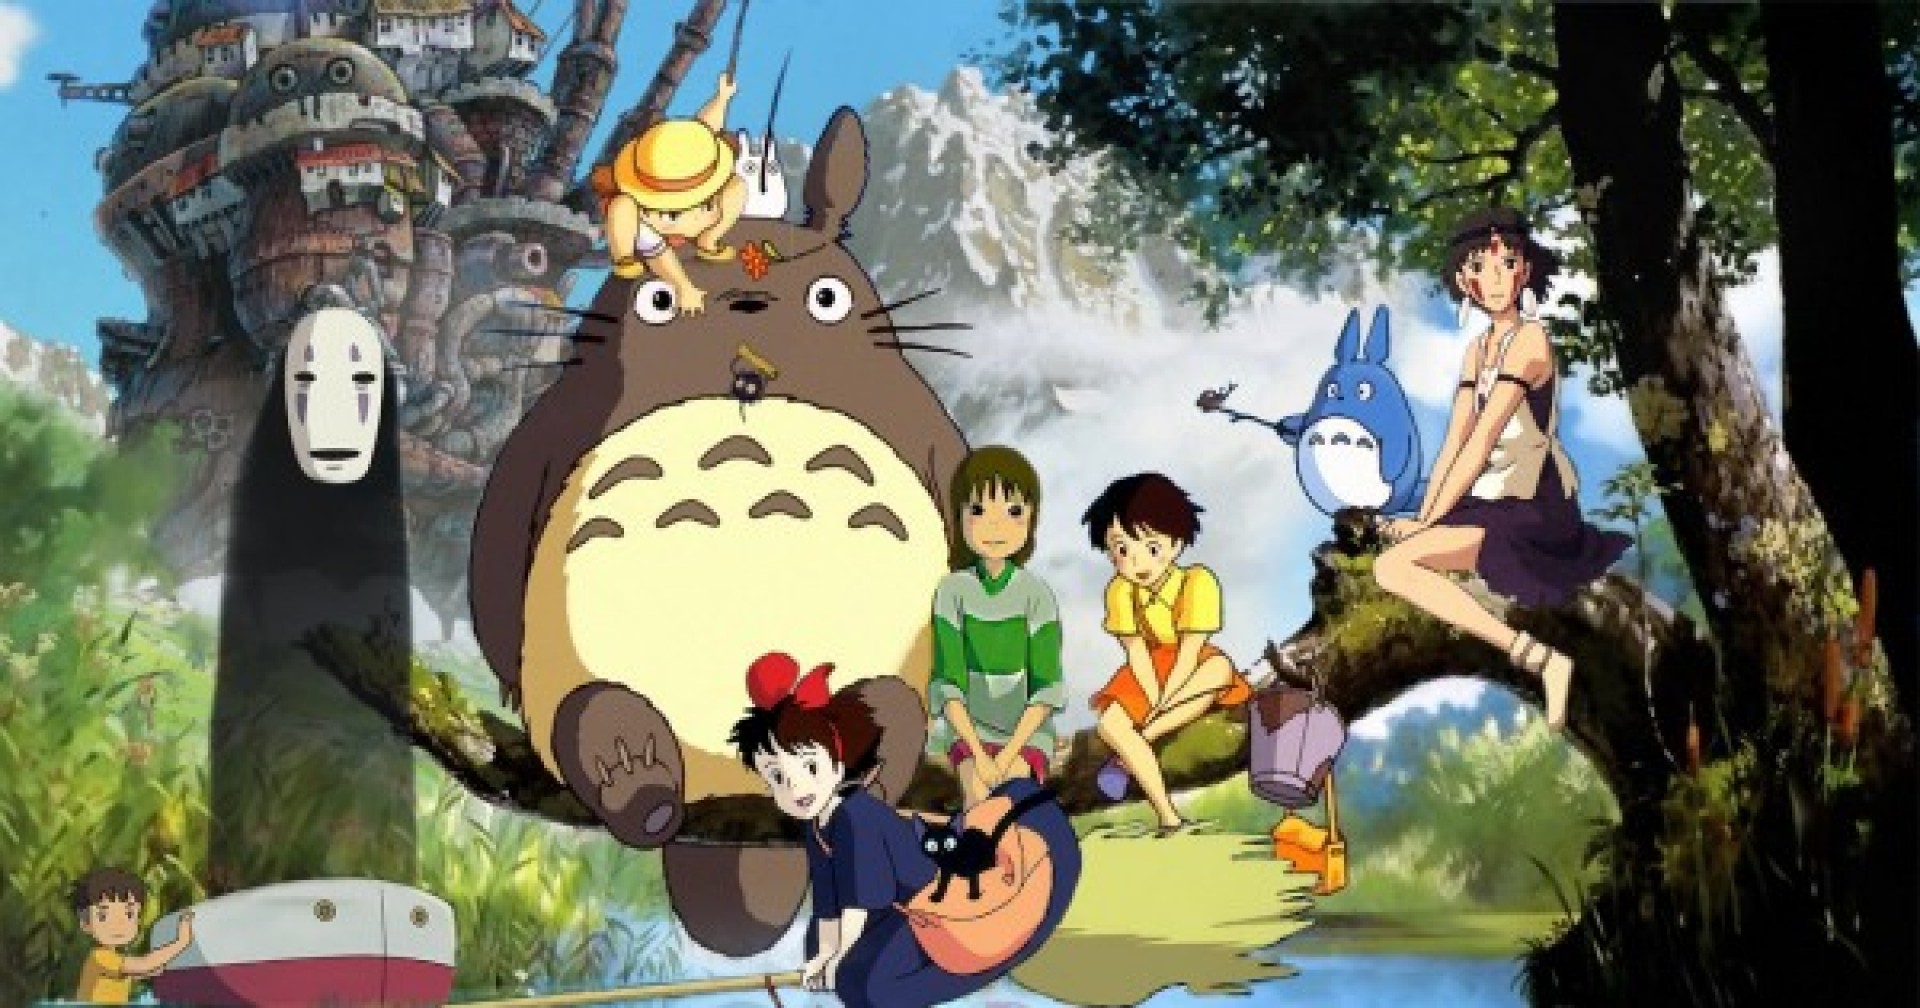 25 bộ phim hoạt hình Anime hay nhất mọi thời đại mà bạn chắc chắn muốn xem